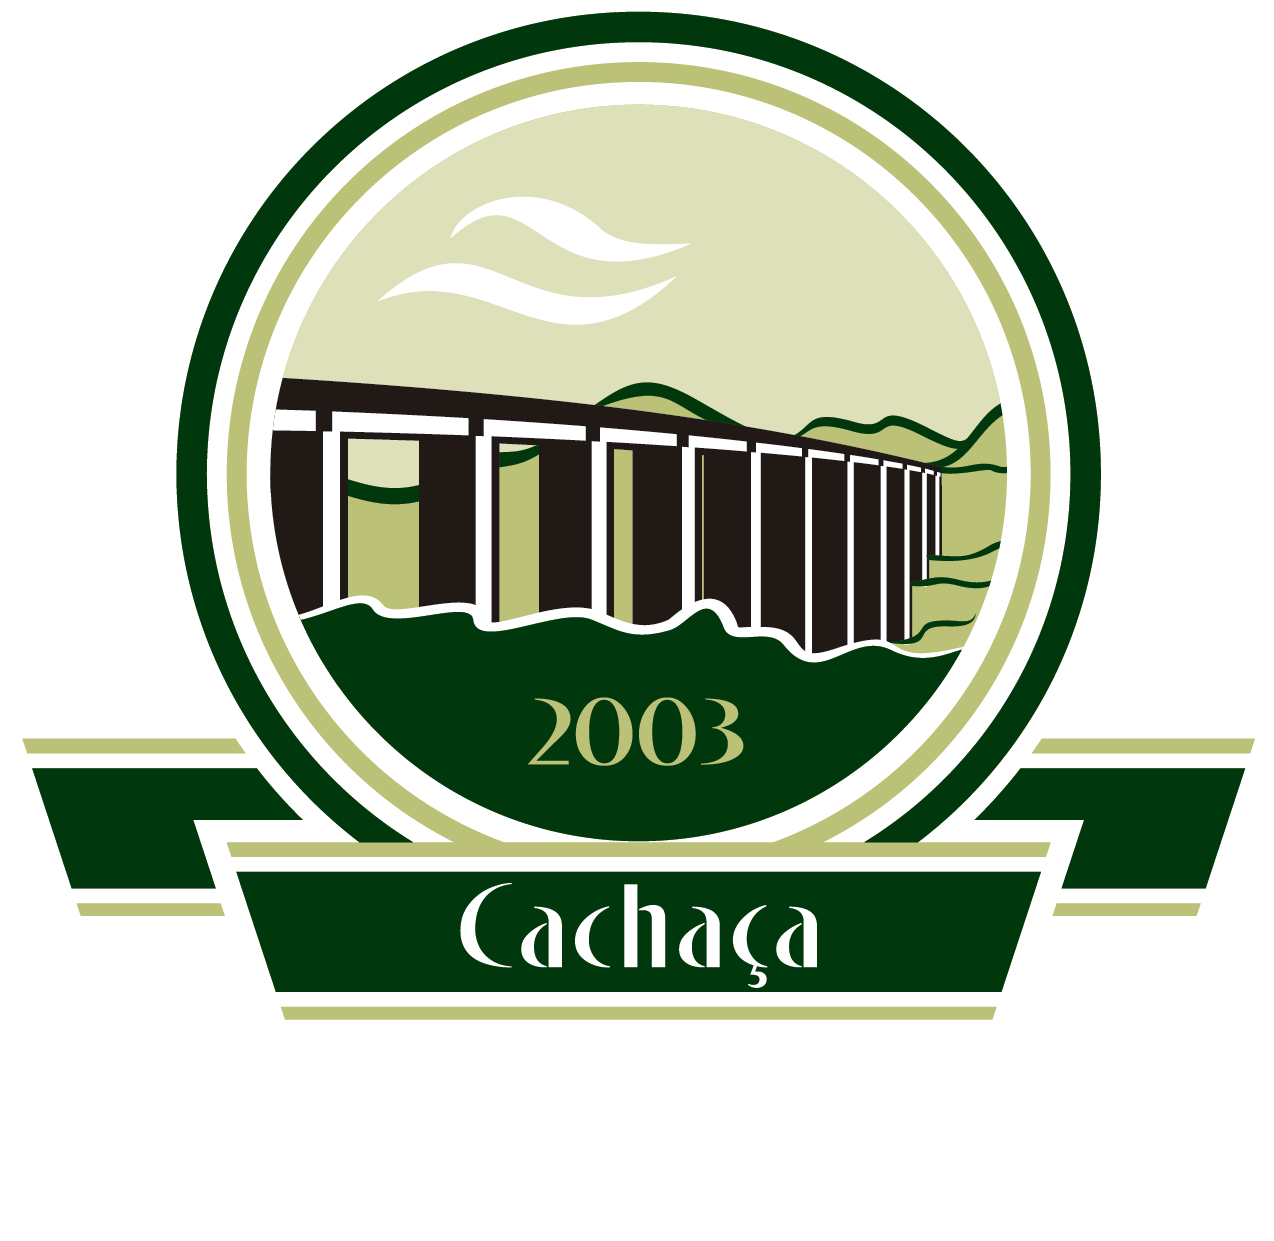 Cachaça Jeceaba